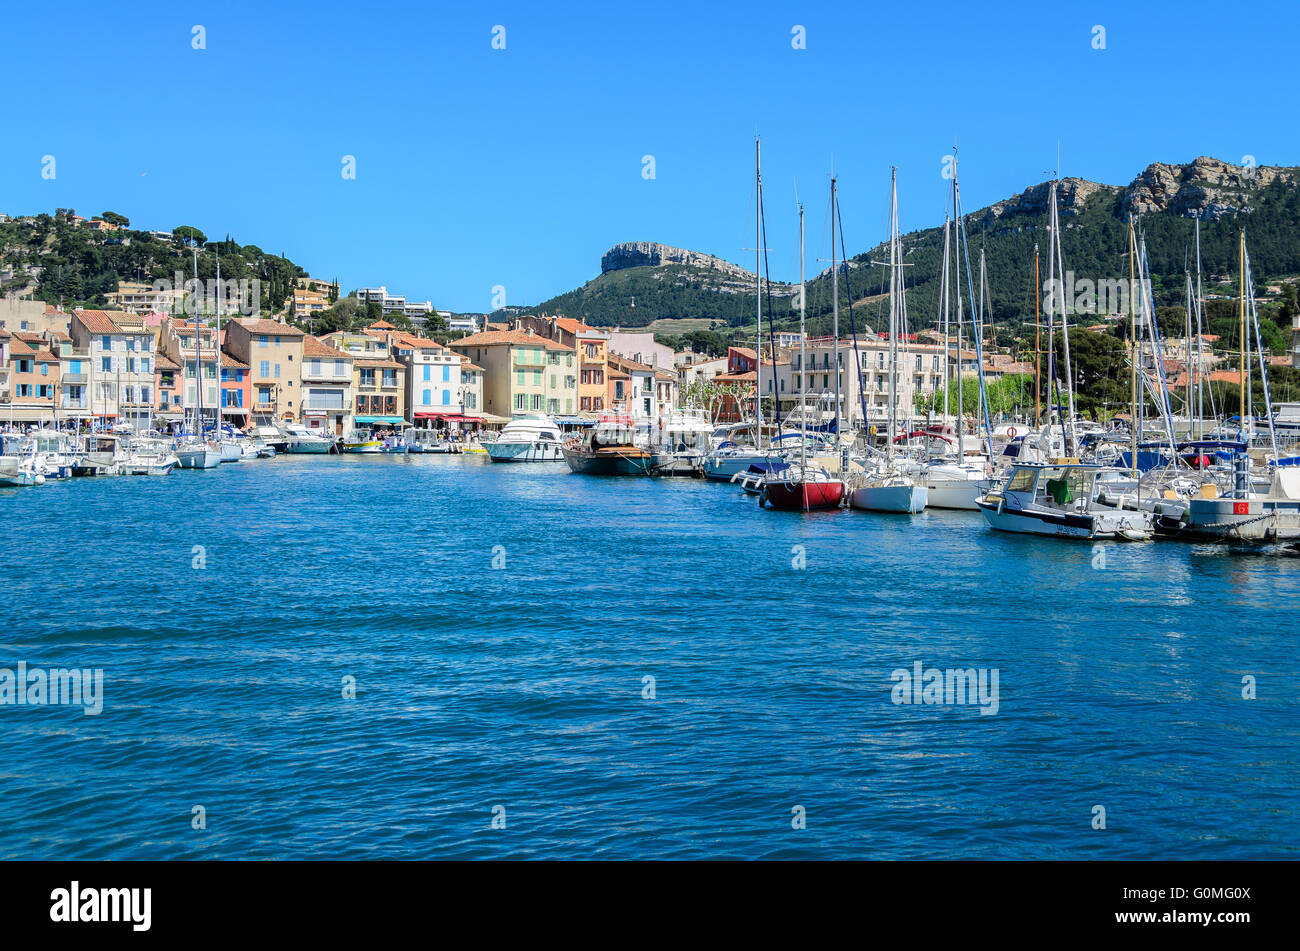 Port de Cassis et ses bateaux, Cassis, BDR, France Stock Photo - Alamy